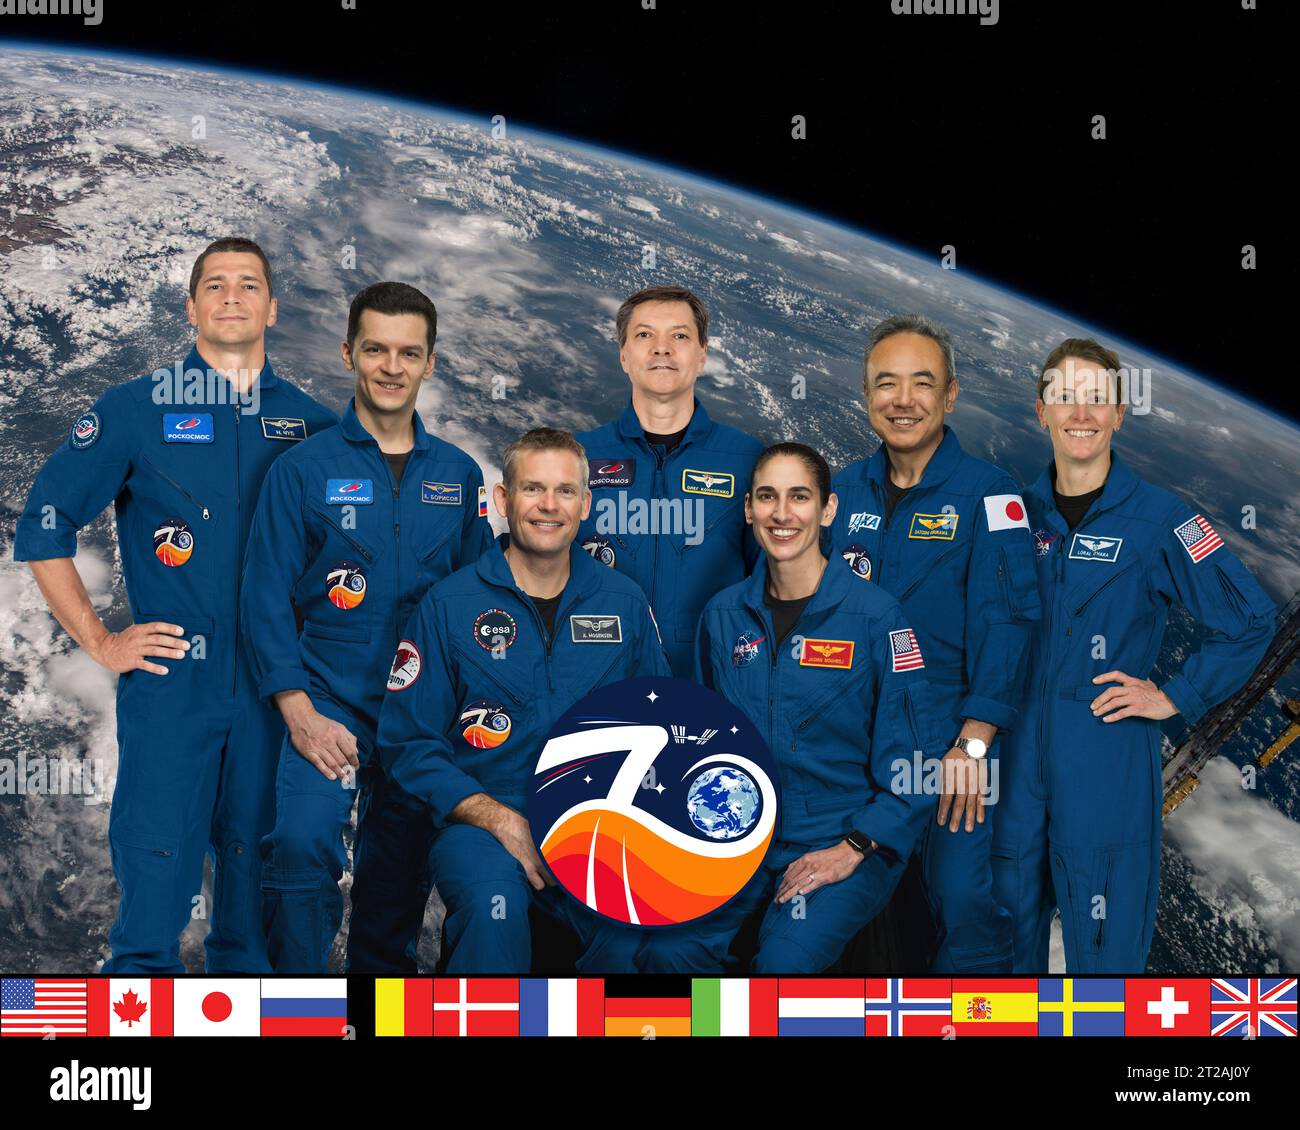 . Iss070-s-002 (6 mars 2023) --- le portrait officiel de l'équipage de l'expédition 70 avec (rangée du haut à partir de la gauche) les cosmonautes de Roscosmos Nikolai Chub, Konstantin Borisov et Oleg Kononenko ; l'astronaute de la JAXA (Agence japonaise d'exploration aérospatiale) Satoshi Furukawa ; et l'astronaute de la NASA Loral O'Hara. Au premier rang se trouvent Andreas Mogensen, astronaute de l'ESA (Agence spatiale européenne) et commandant de l'expédition 70, et Jasmin Moghbeli, astronaute de la NASA. Banque D'Images